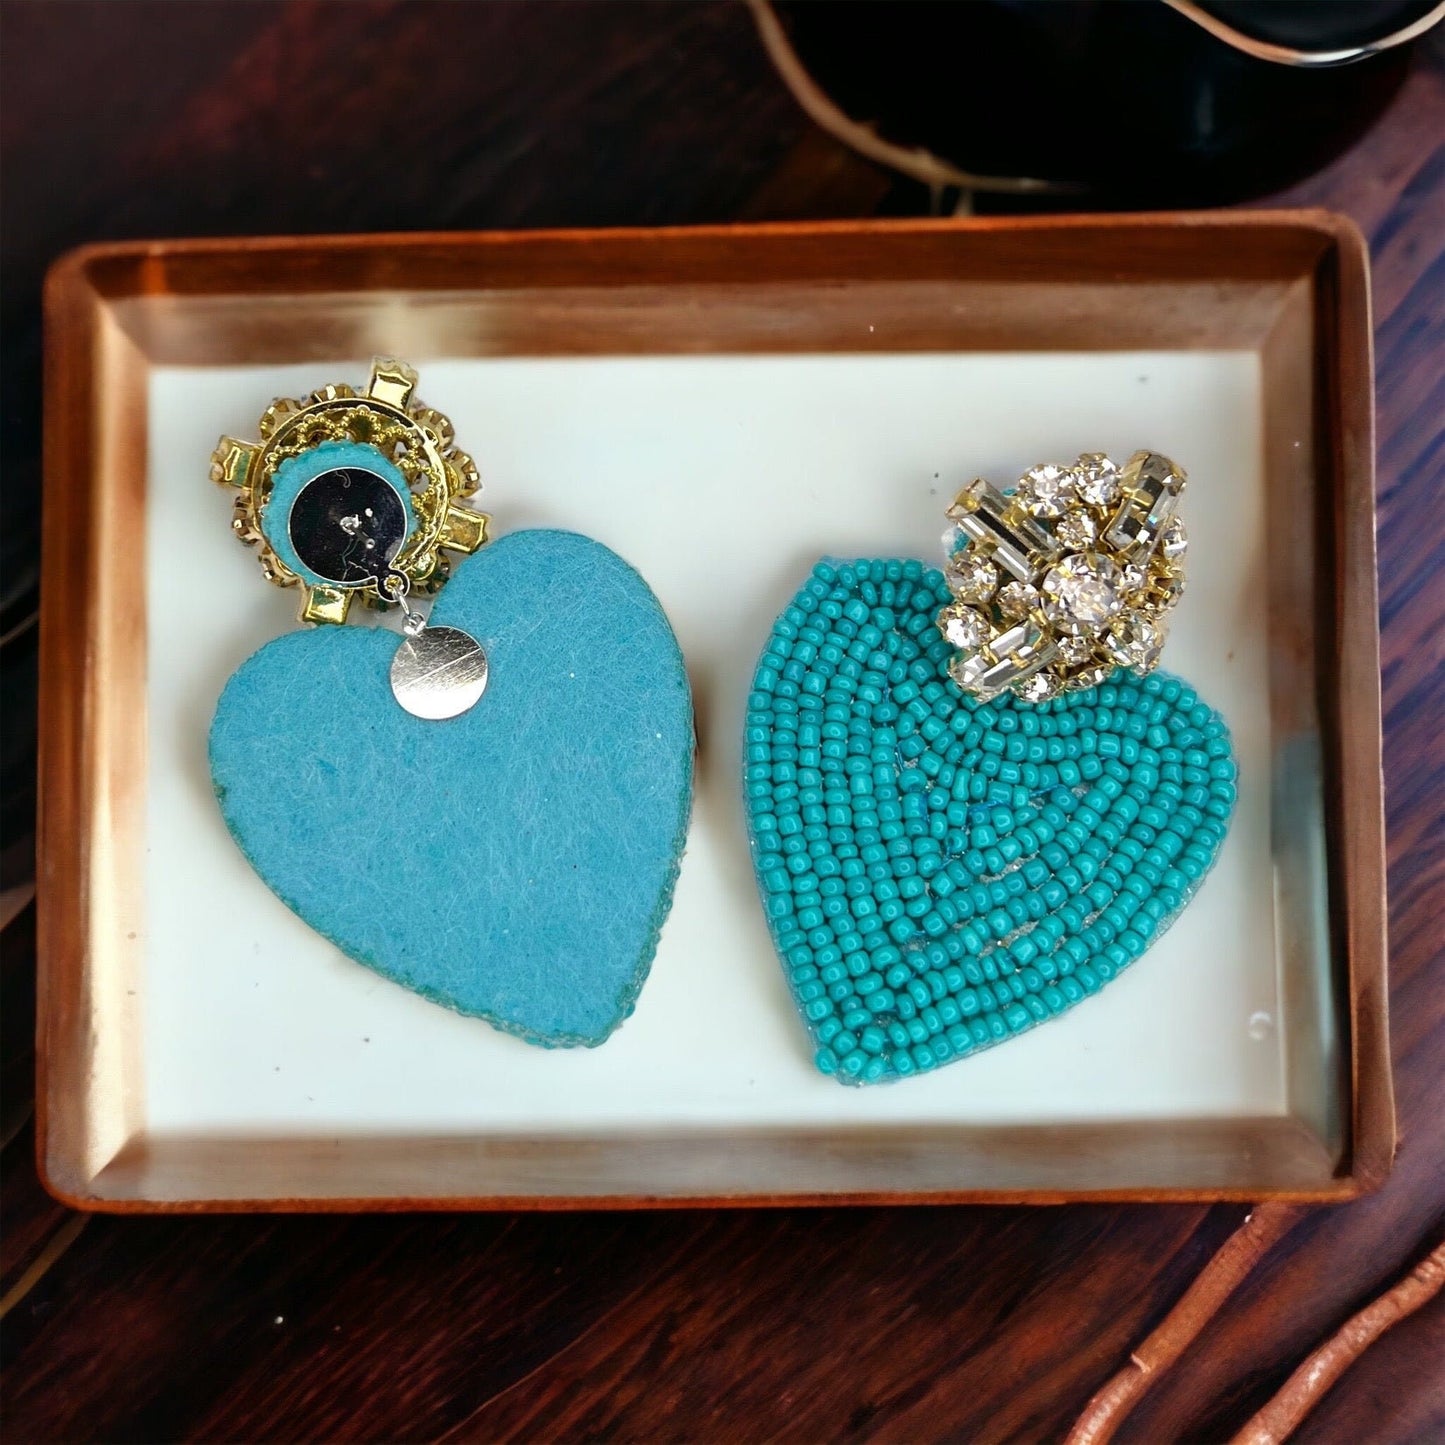 Beaded Heart Earrings - Rhinestone Earrings, Boho Earrings, Bohemian Style, Kentucky Derby, Rose Earrings, Handmade Jewelry, Anniversary Gif